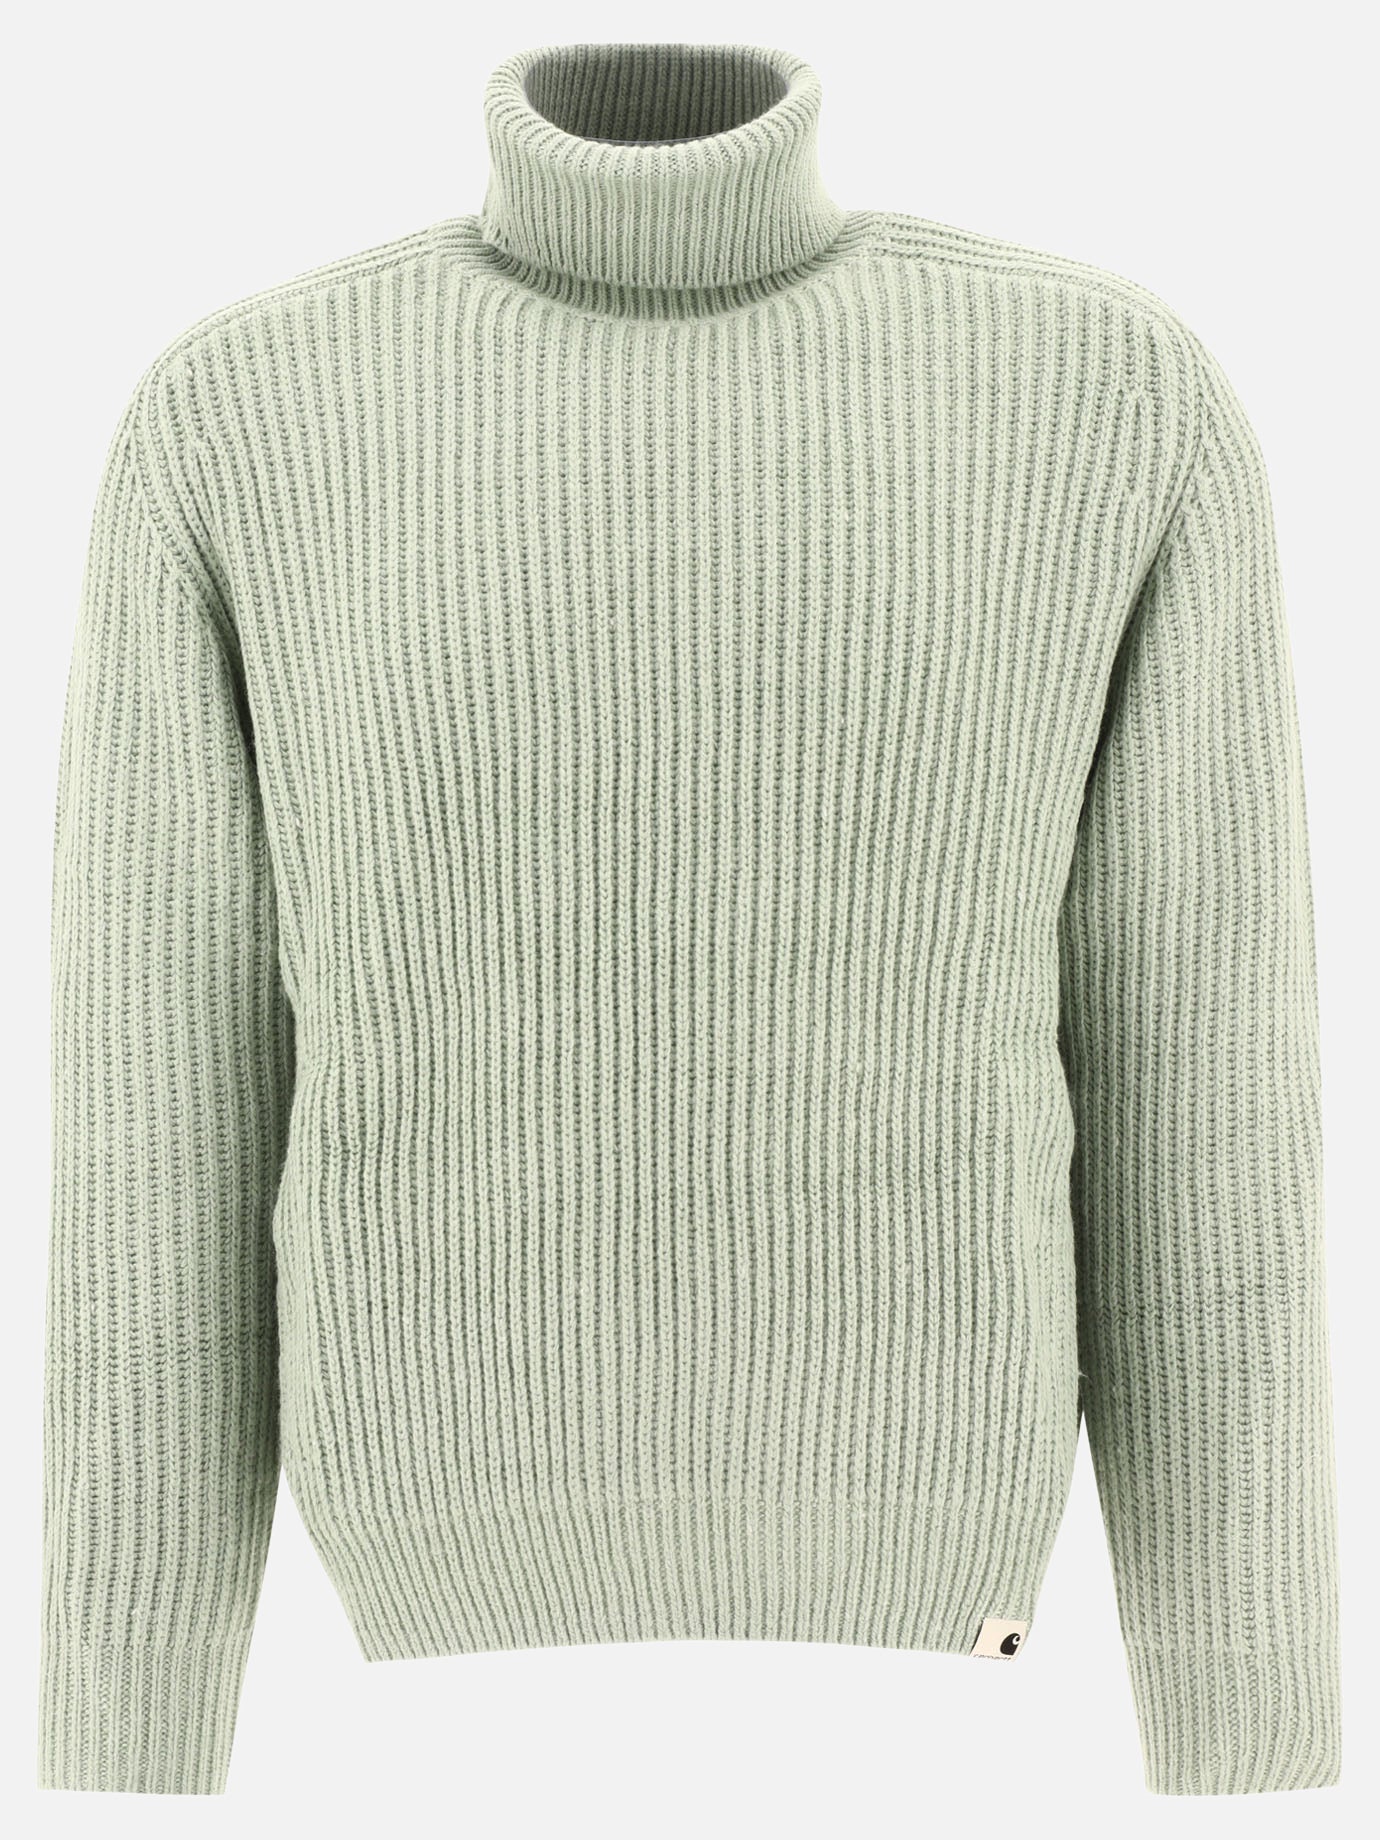 "W Mia" sweater